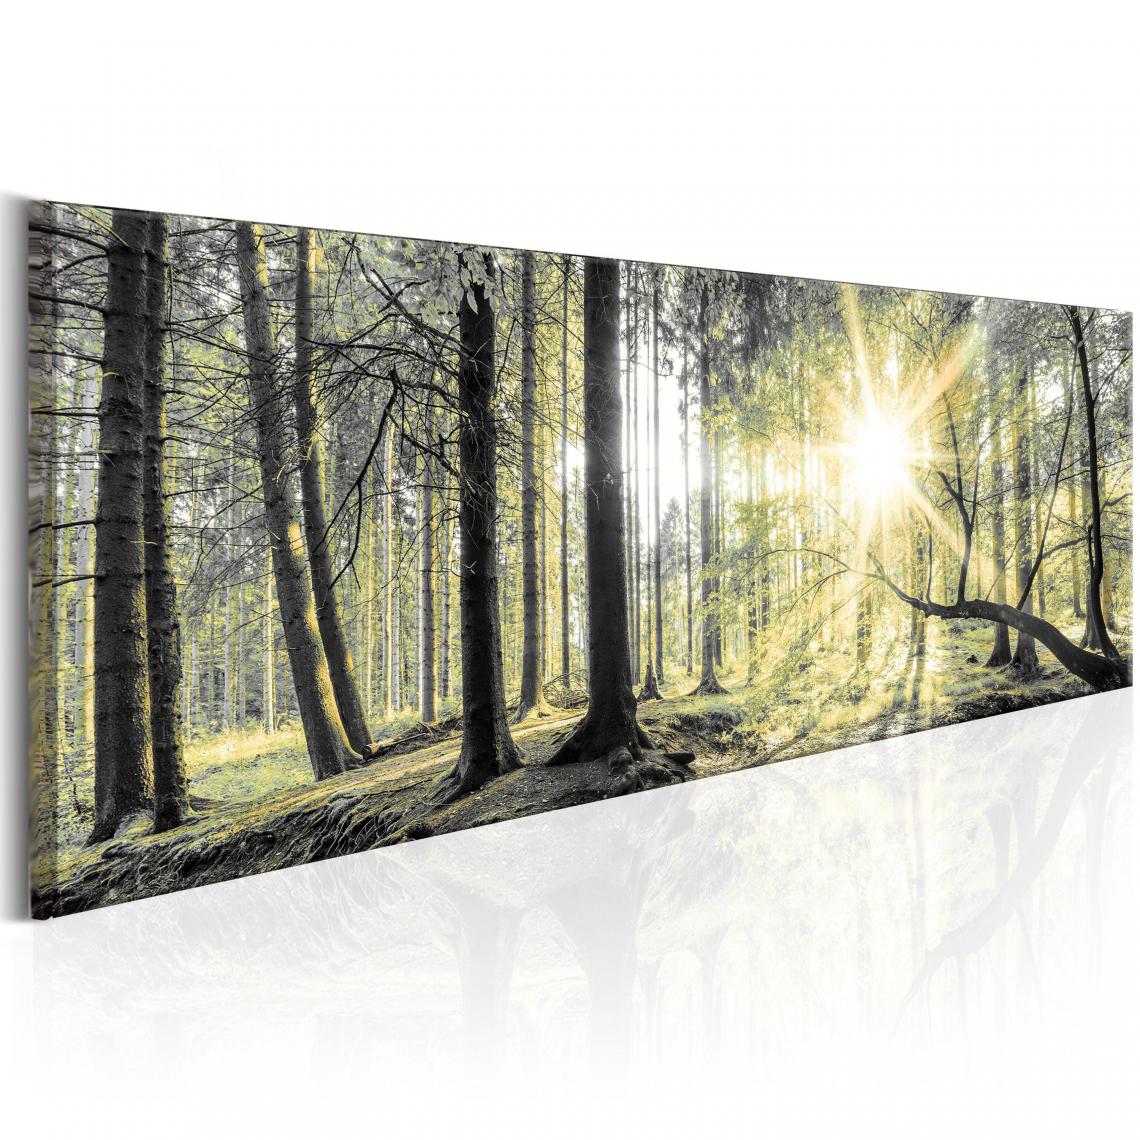 Decoshop26 - Tableau sur toile décoration murale image imprimée cadre en bois à suspendre Forêt du matin 150x50 cm 11_0006268 - Tableaux, peintures